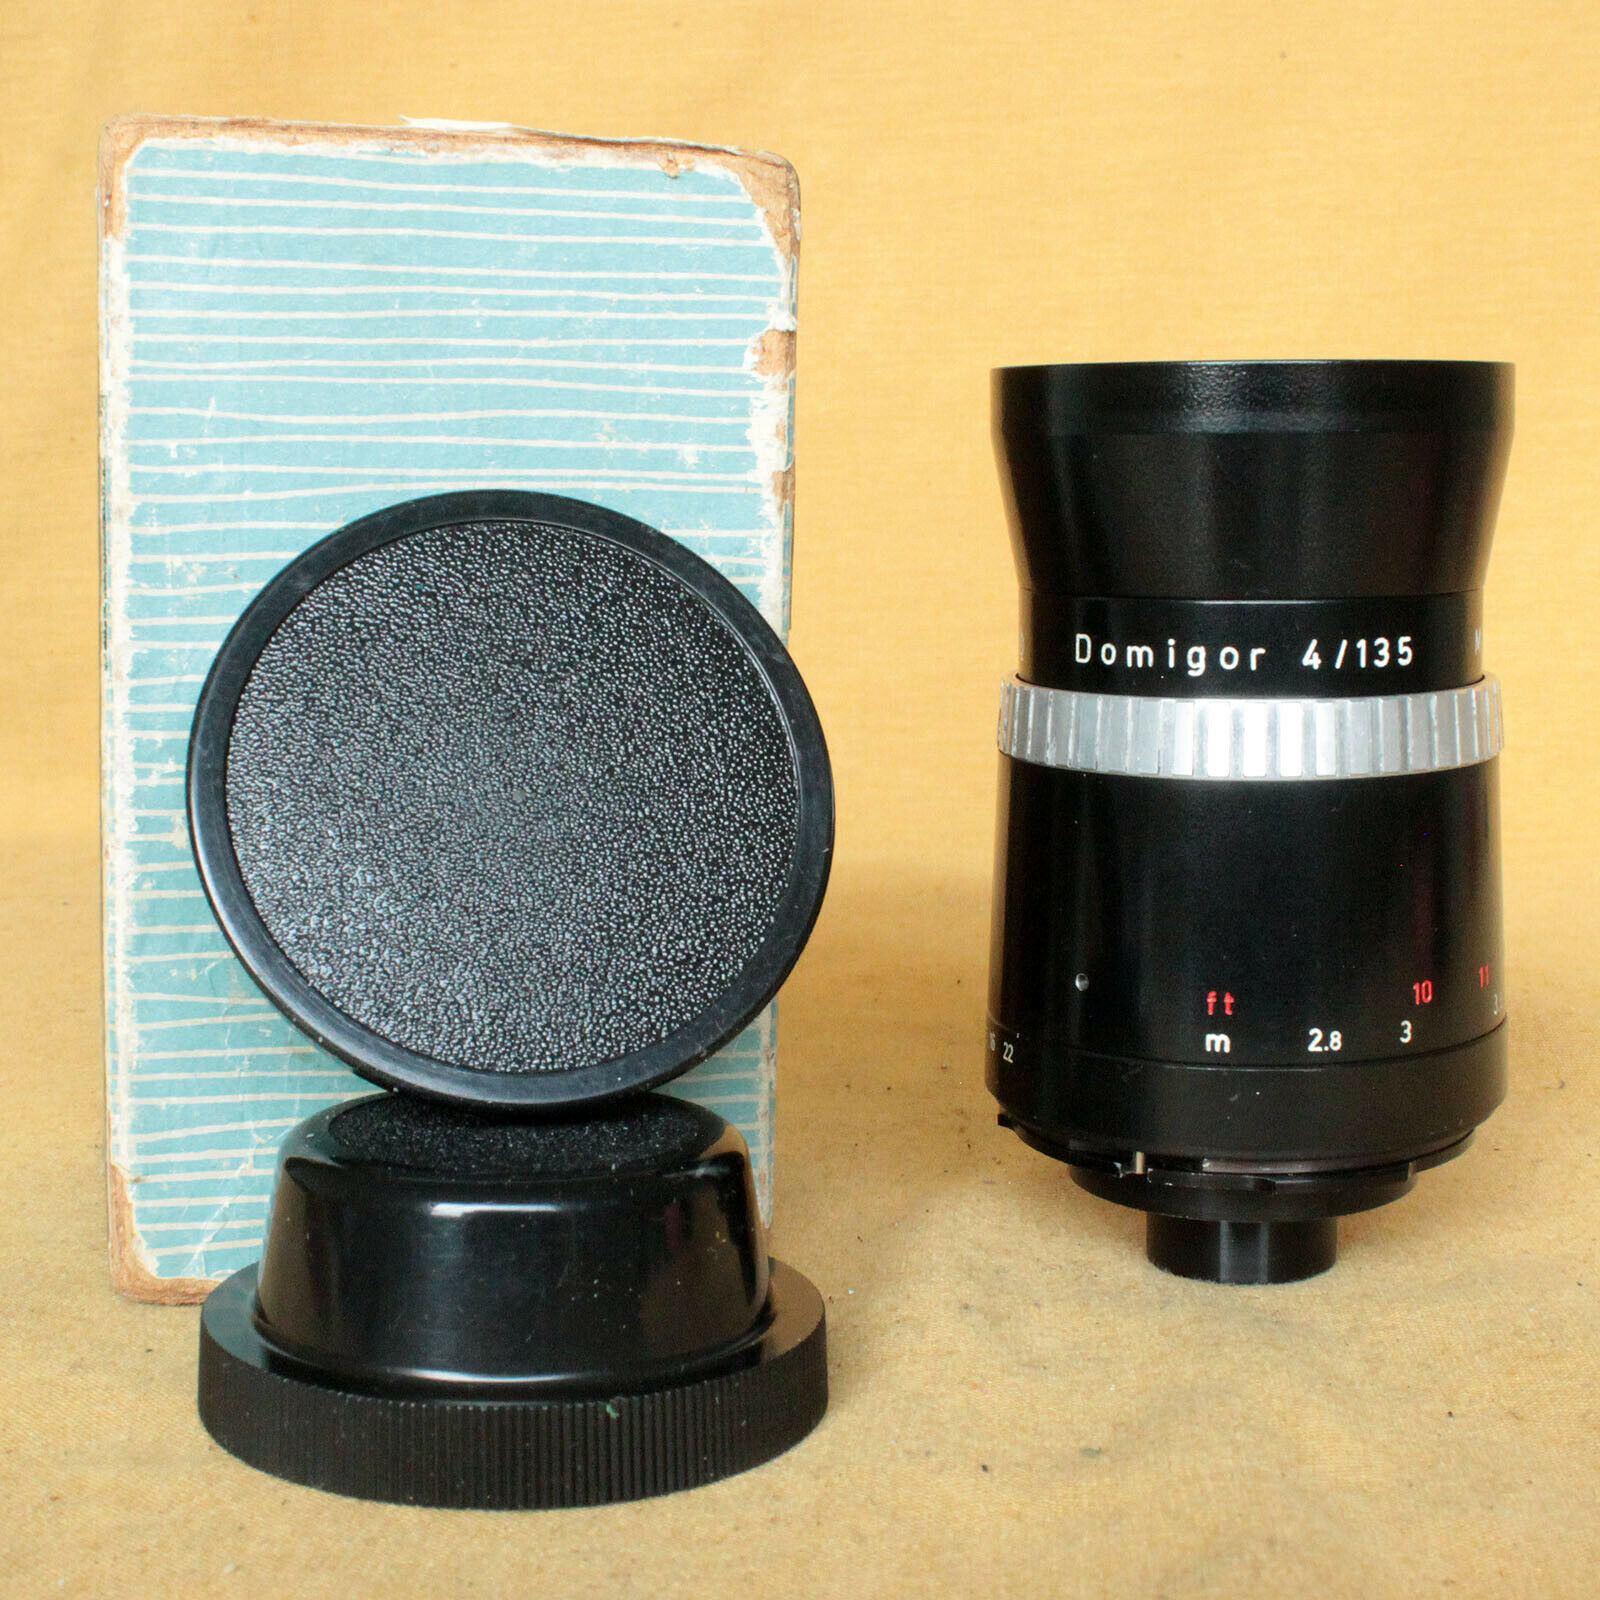 Domigor 135/4 Meyer Optik Tele Lens For Pentina Cla Works Rare Original Box